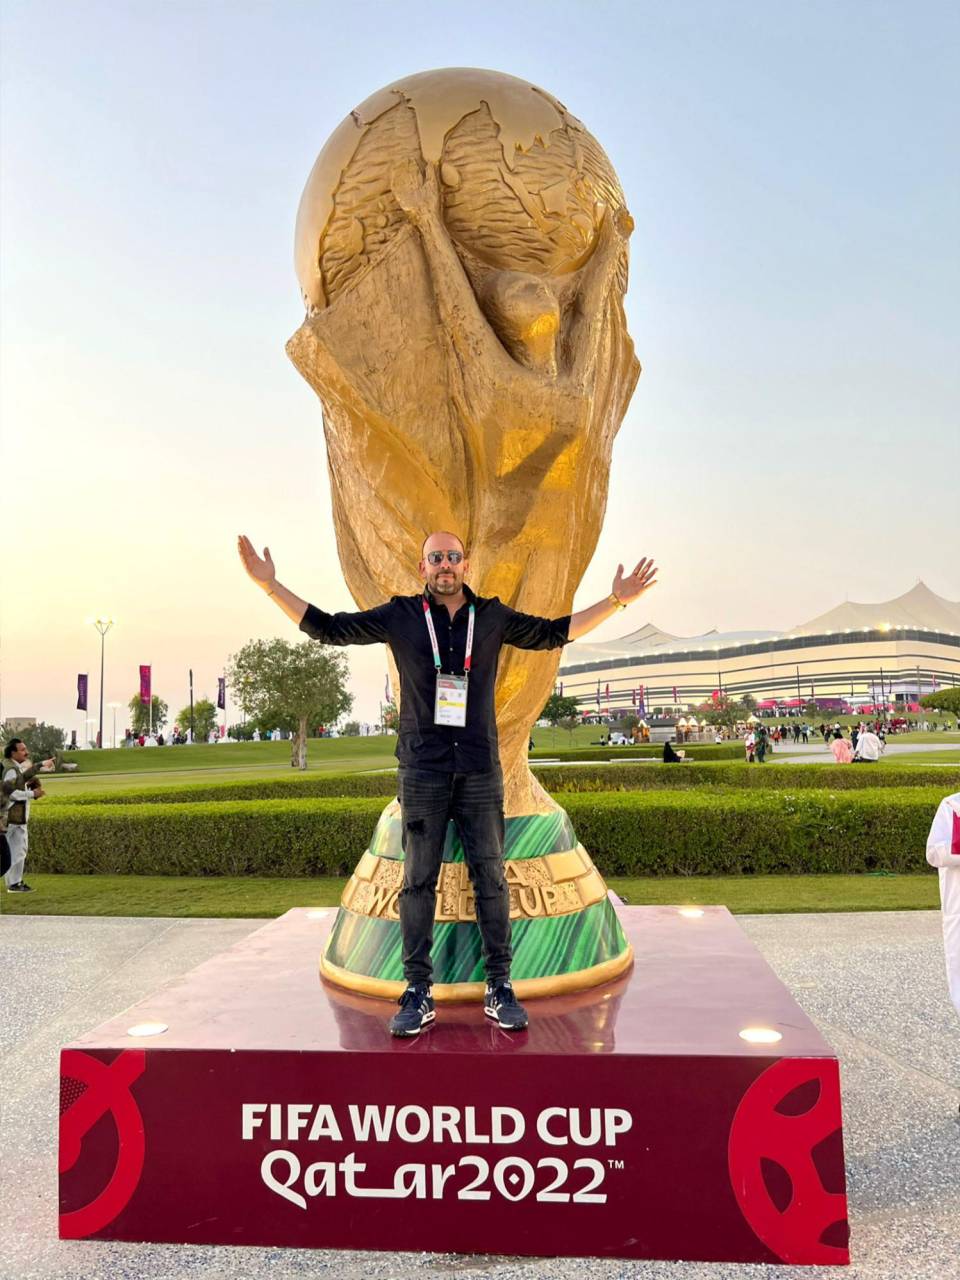 A su corta edad, José puede presumir ya haber estado presente en cuatro Copas del Mundo, siendo Qatar 2022 la última de ellas.